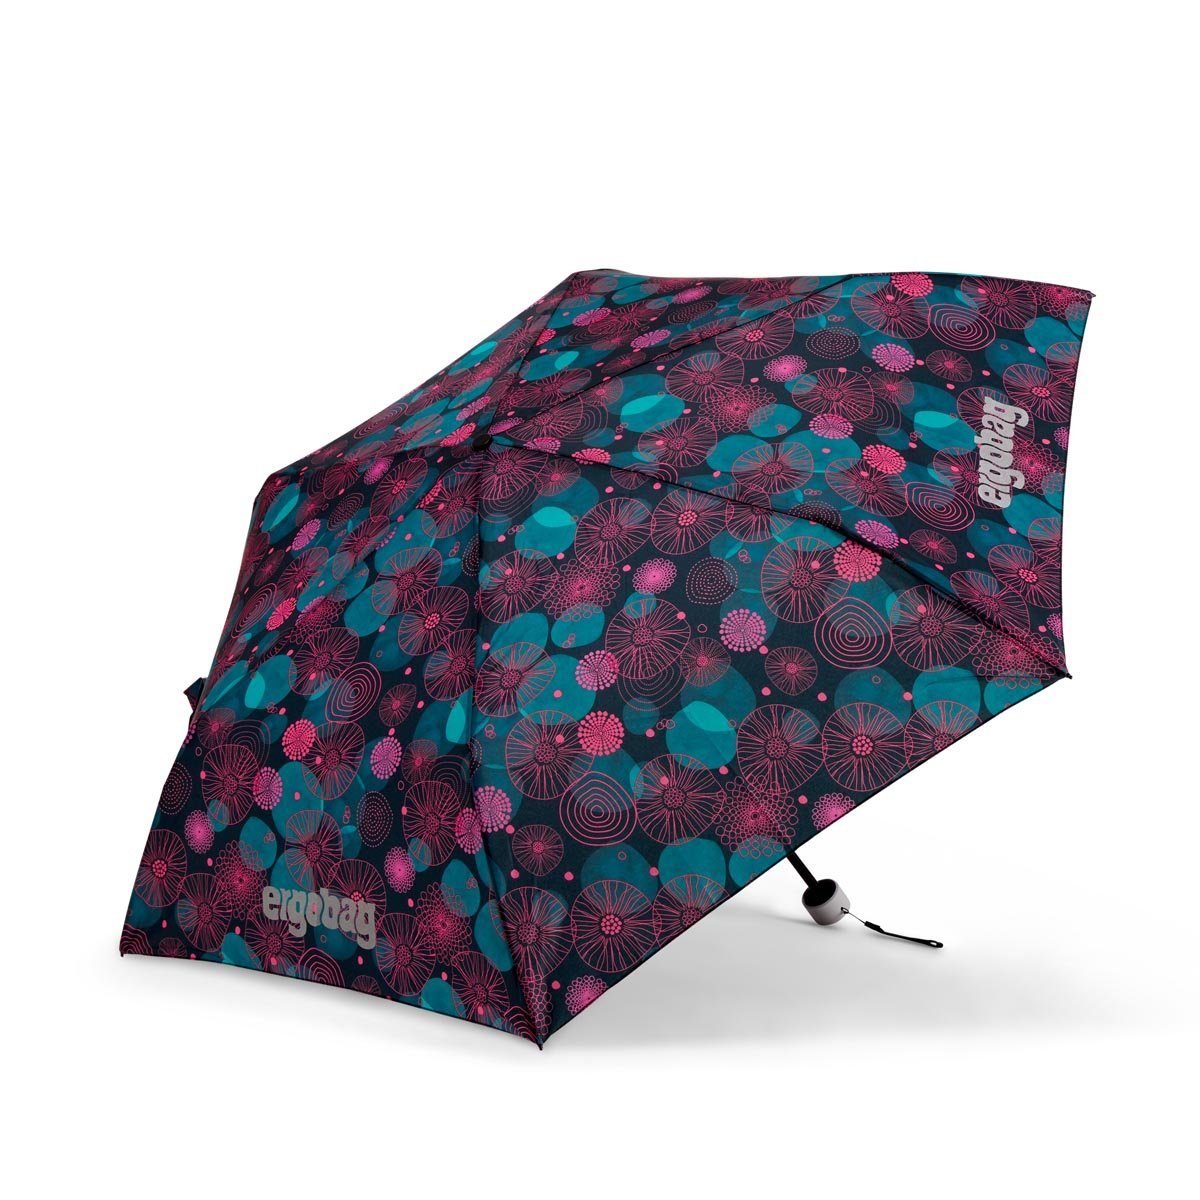 ergobag Bärlaxy Kinder-Regenschirm, Refektierend Taschenregenschirm